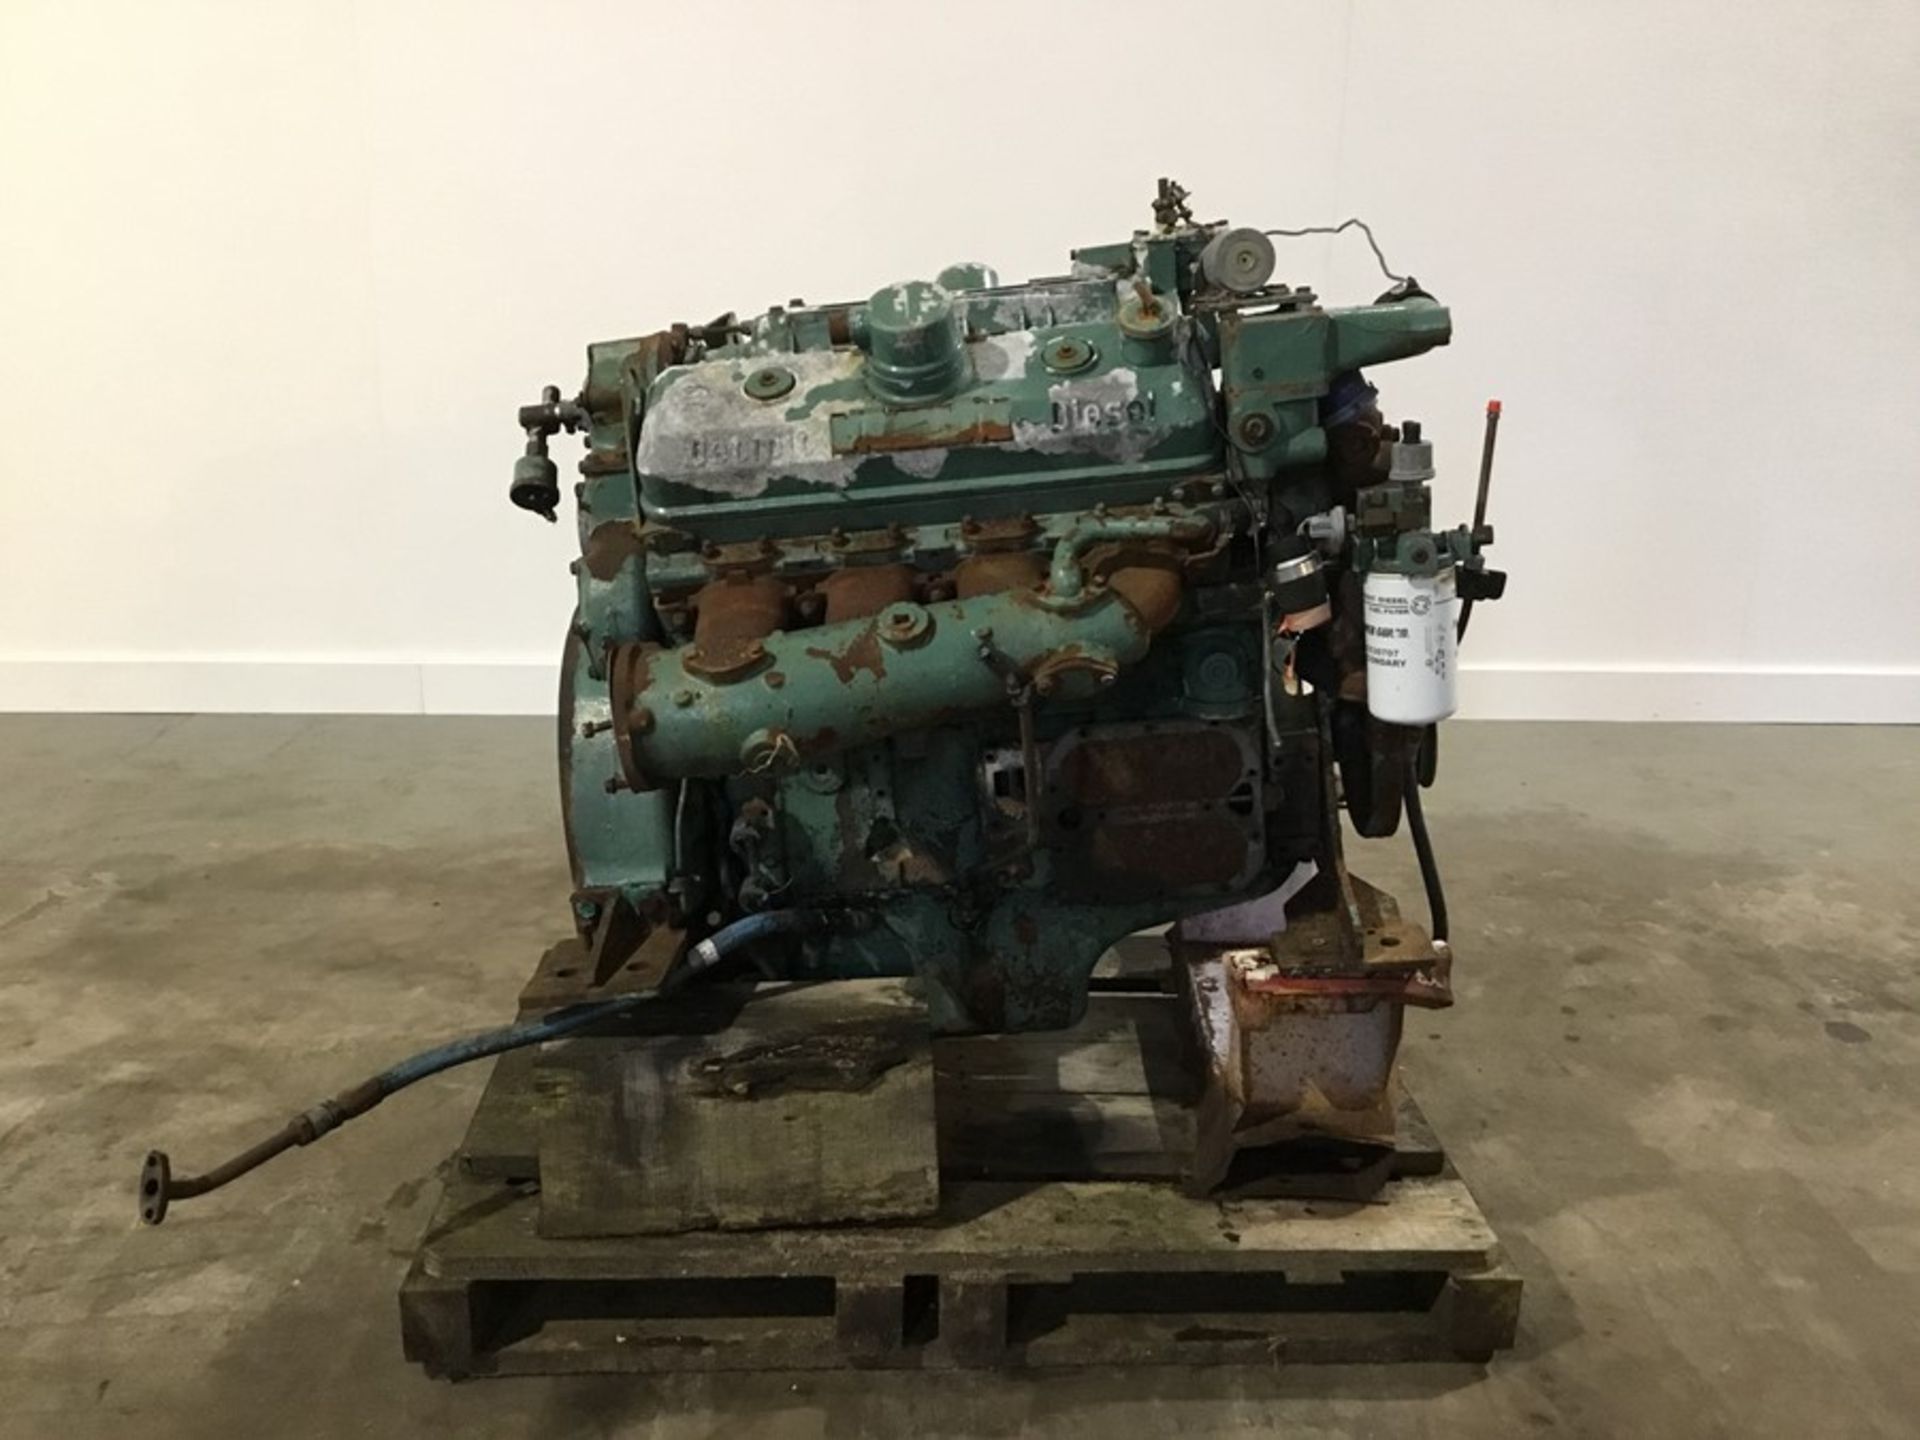 Detroit 8V71 Diesel Engine: Detroit 8v71 v8 Non Turbo Serial Number: 8FW000229*8082-3301 used - Image 14 of 18